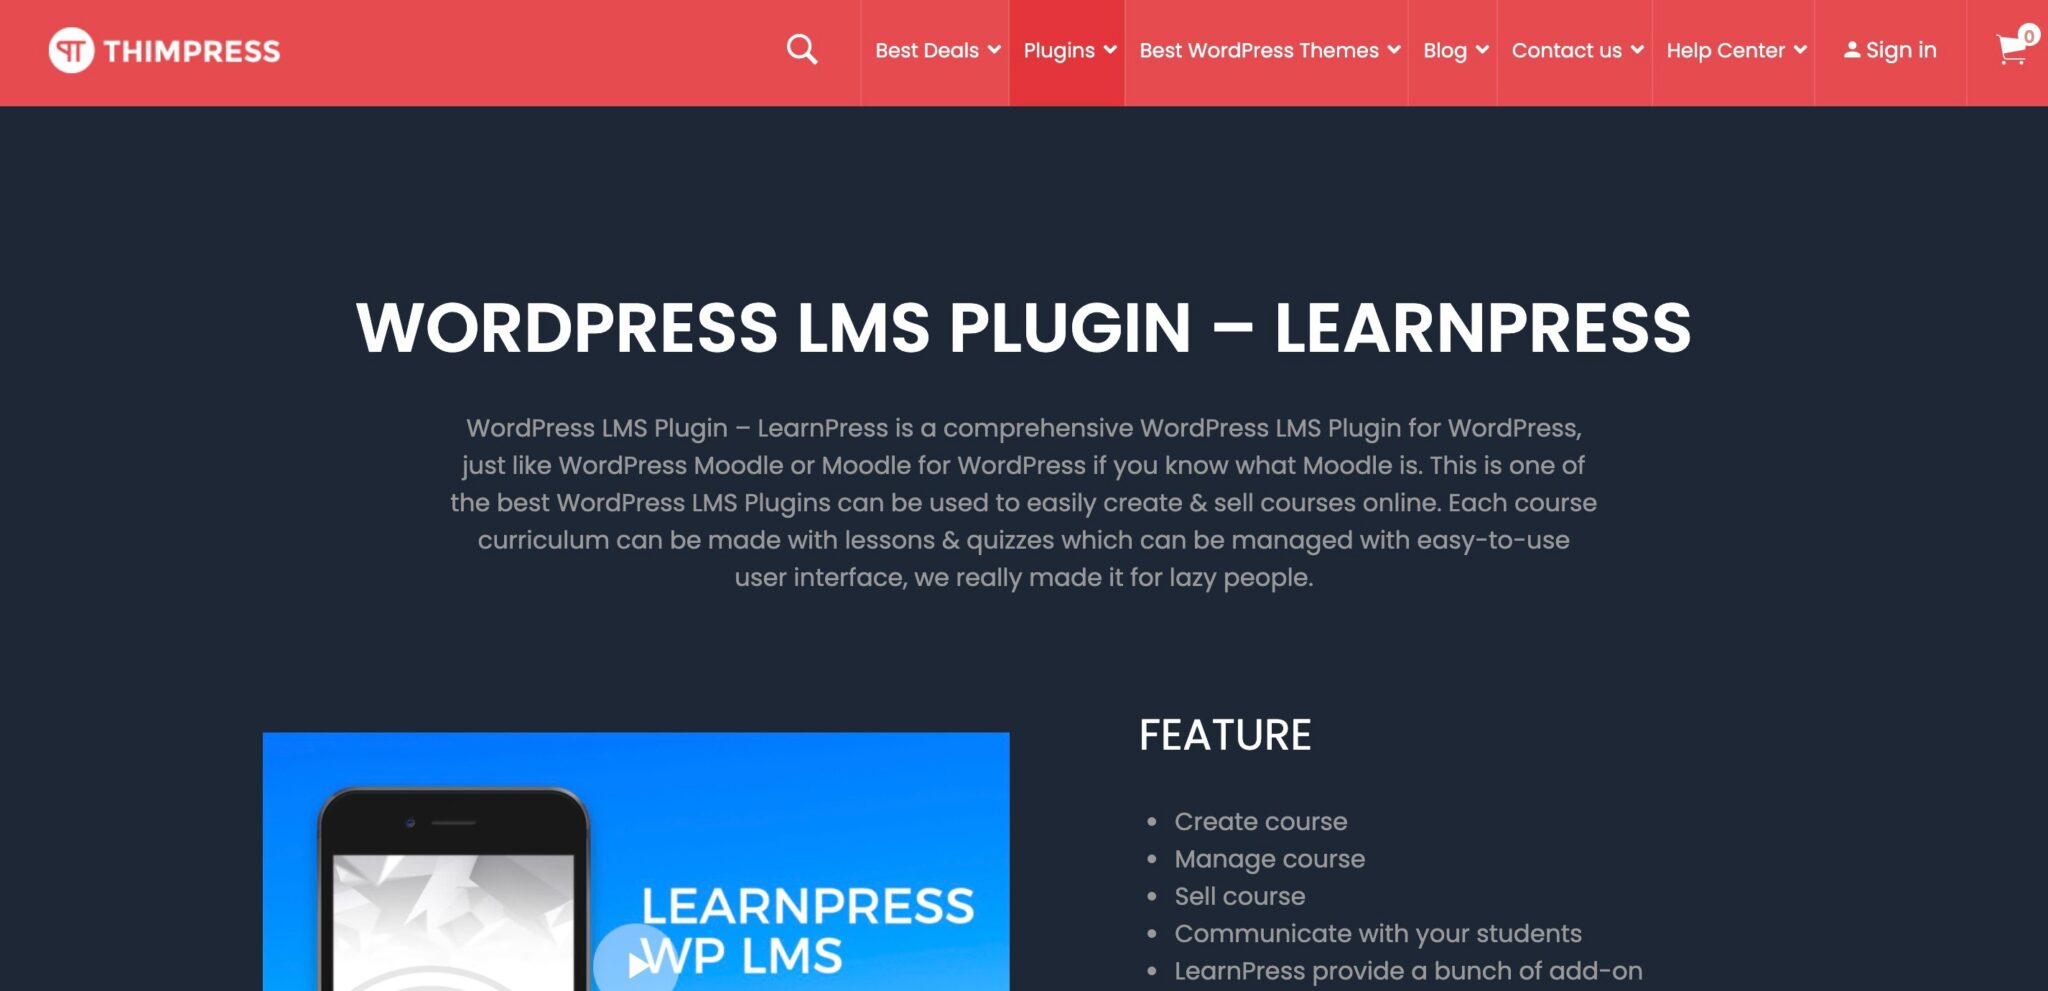 LearnPress vs LearnDash - LearnPress Overview